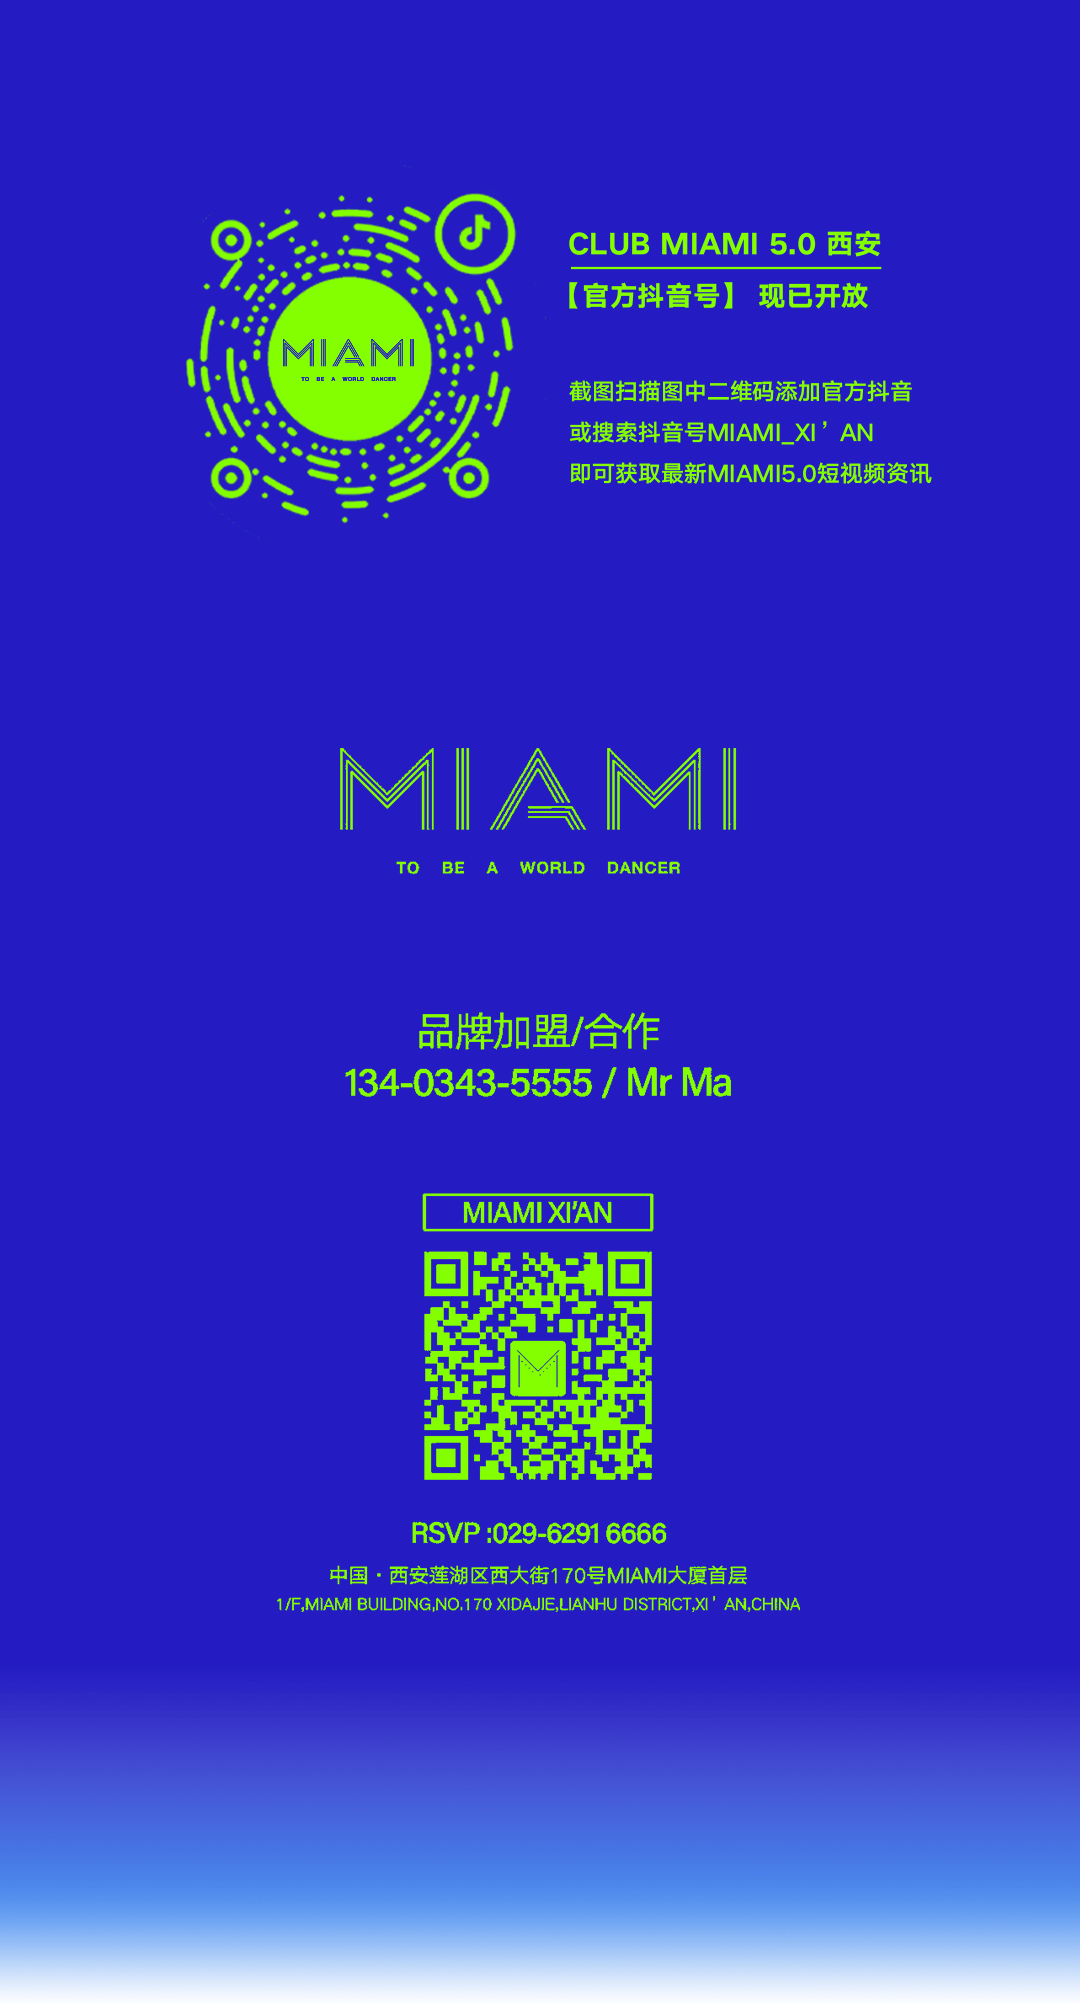 CLUB MIAMI XI'AN丨10.01-03 嘿！别「装」了，知道你已经在等小长假！-西安迈阿密酒吧/MIAMI CLUB